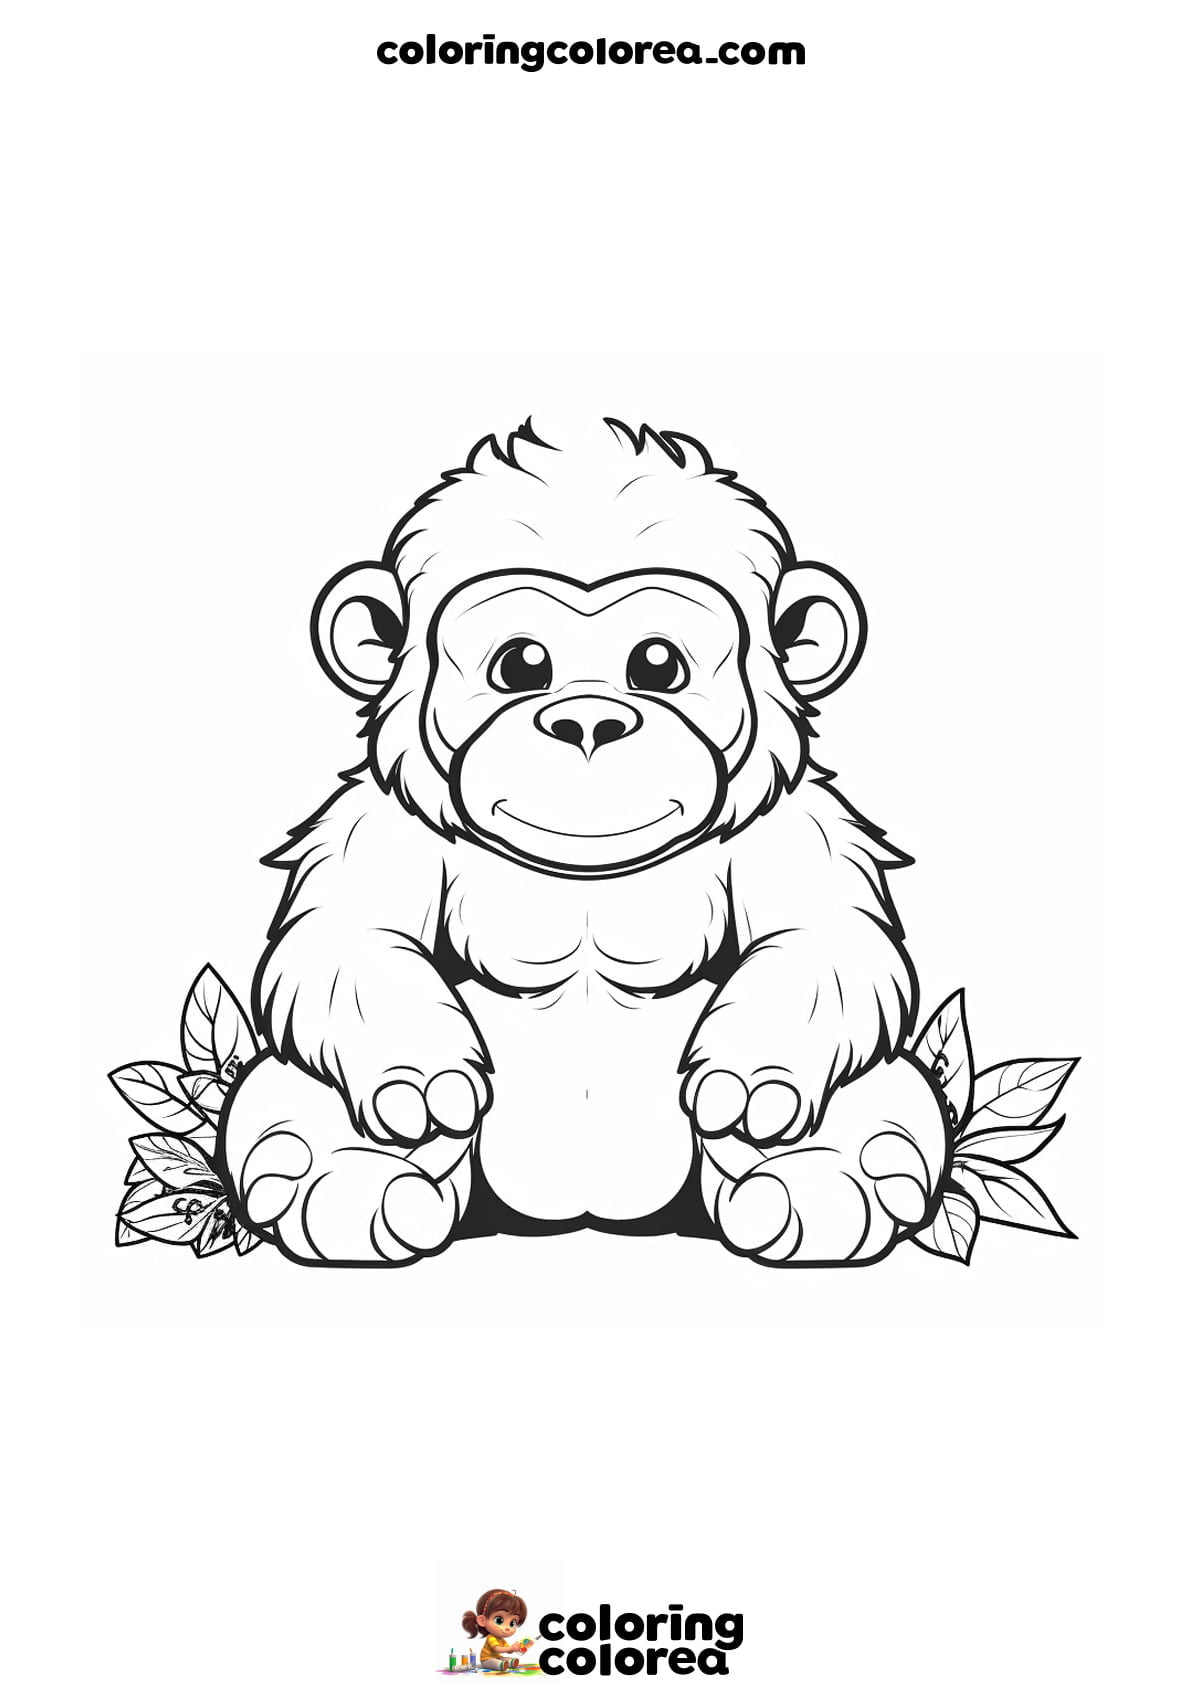 Dibujo para colorear gratis de un pequeño bebé gorila sentado de frente